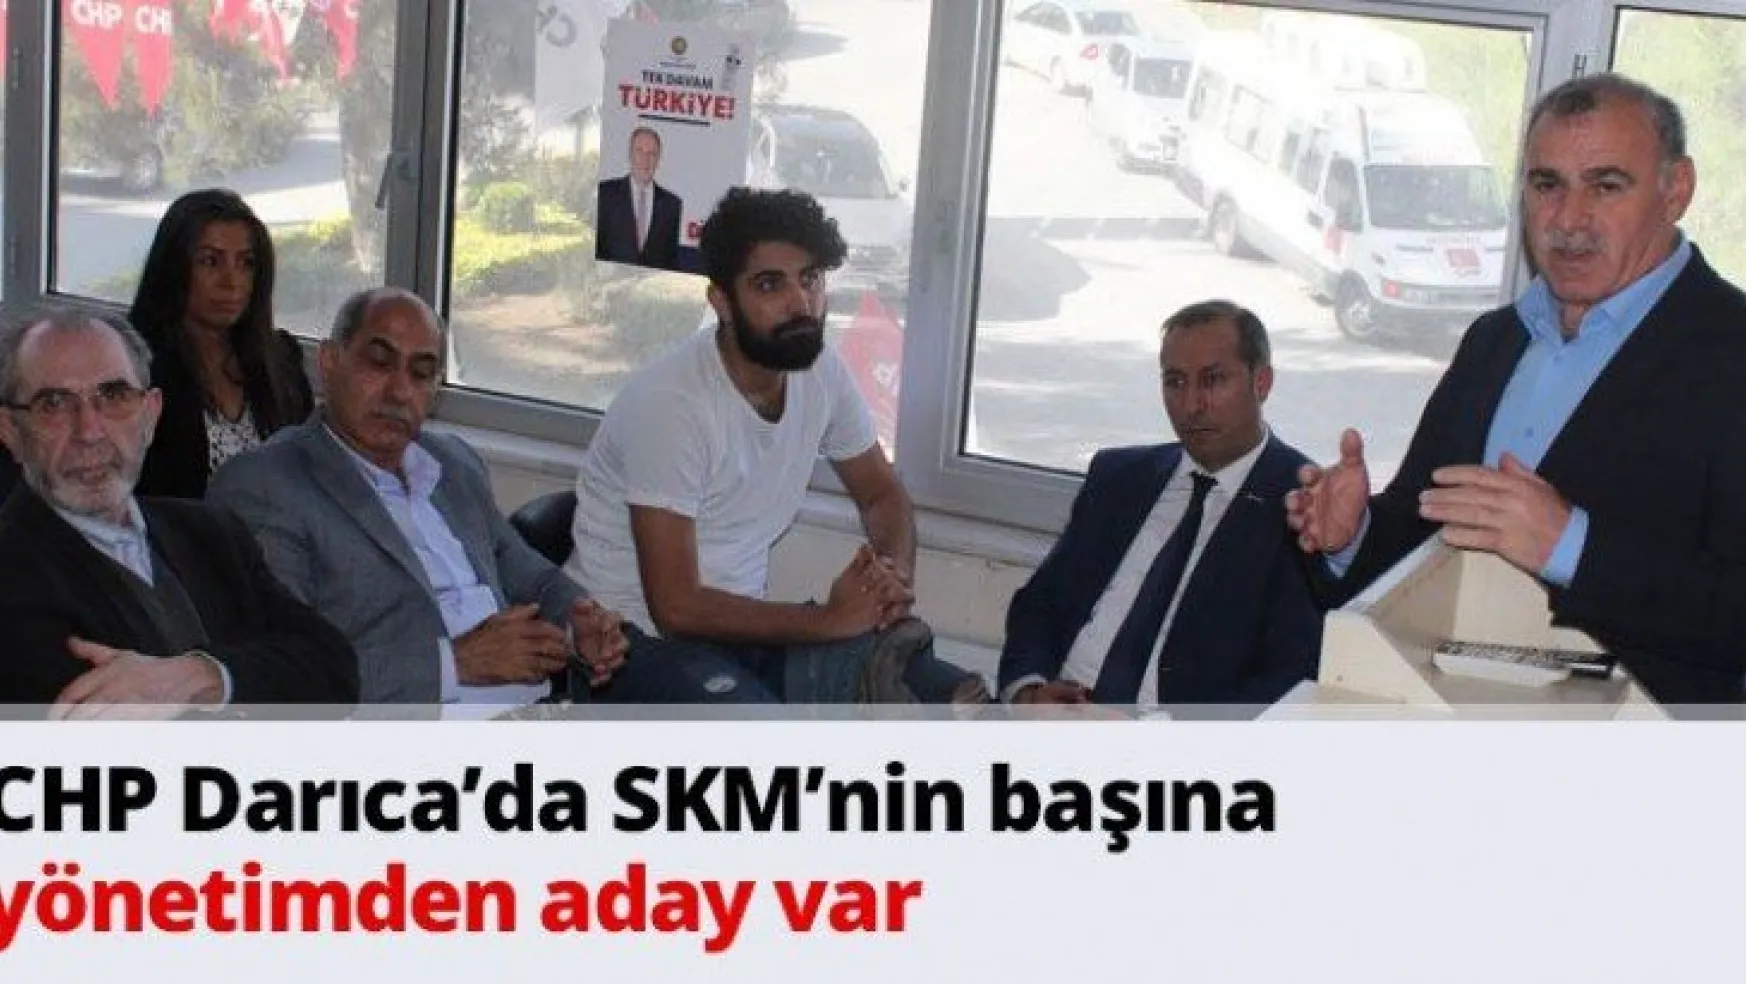 CHP Darıca'da SKM'nin başına yönetimden aday var